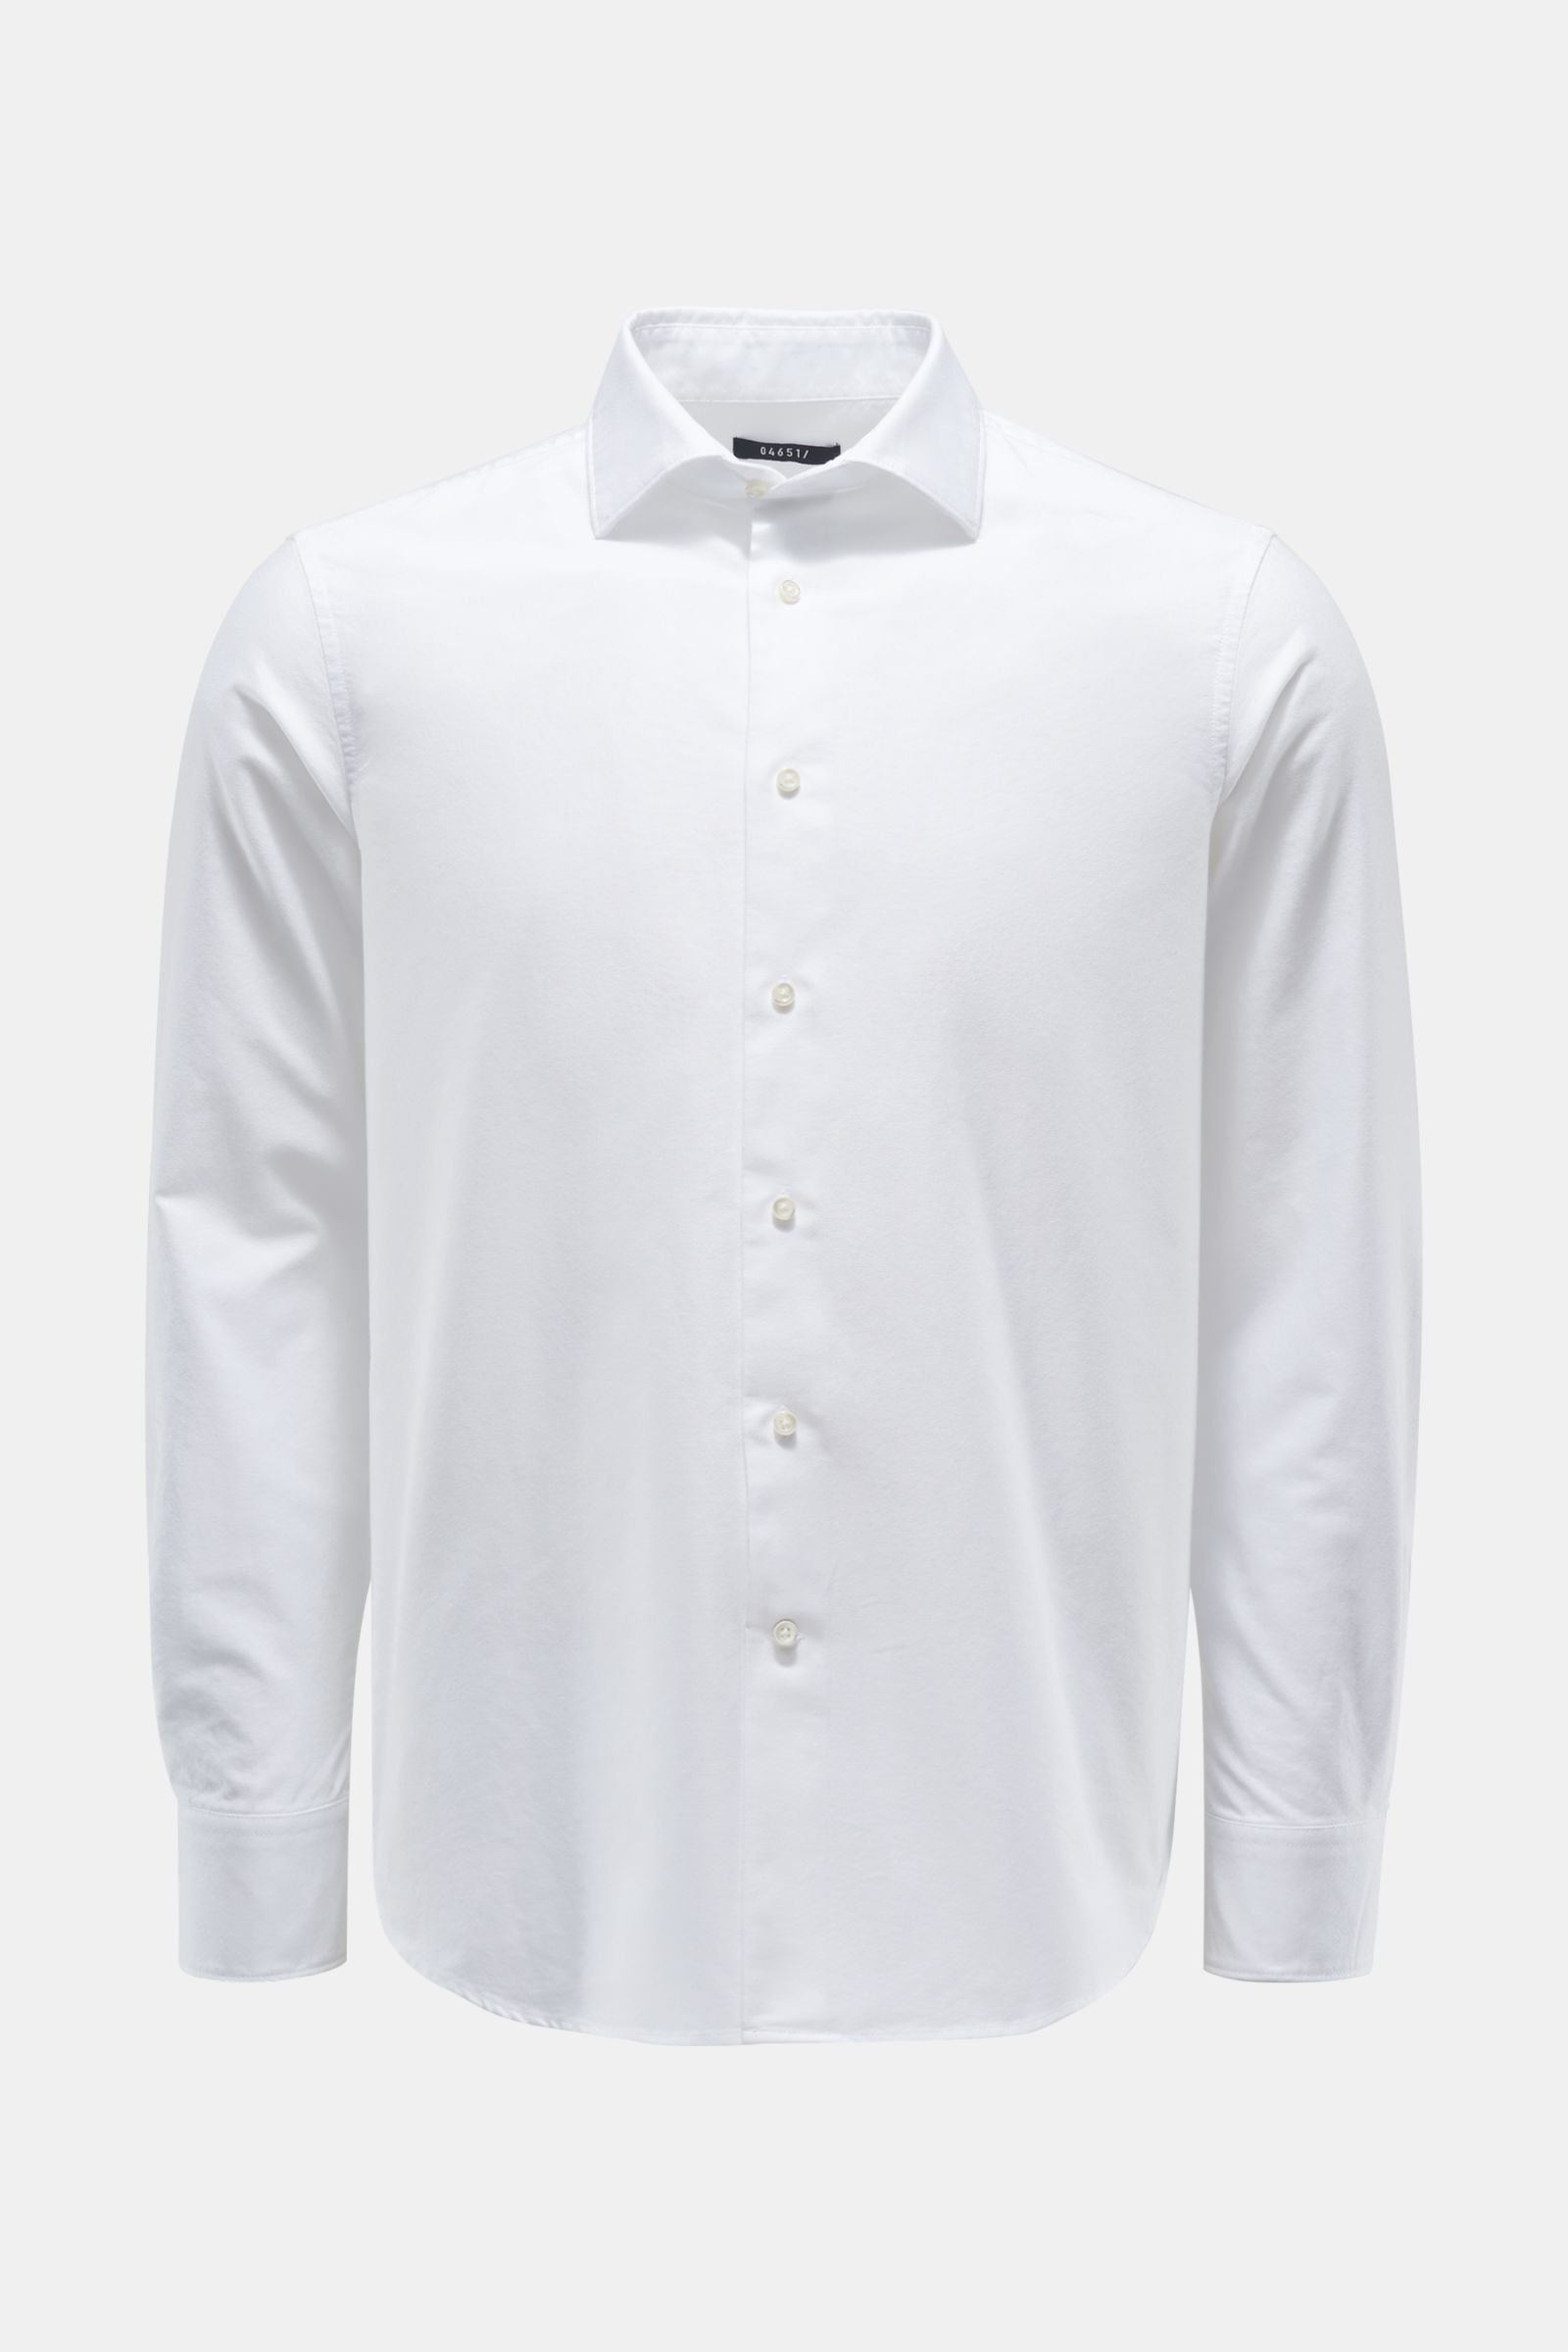 Oxford shirt Kent collar white